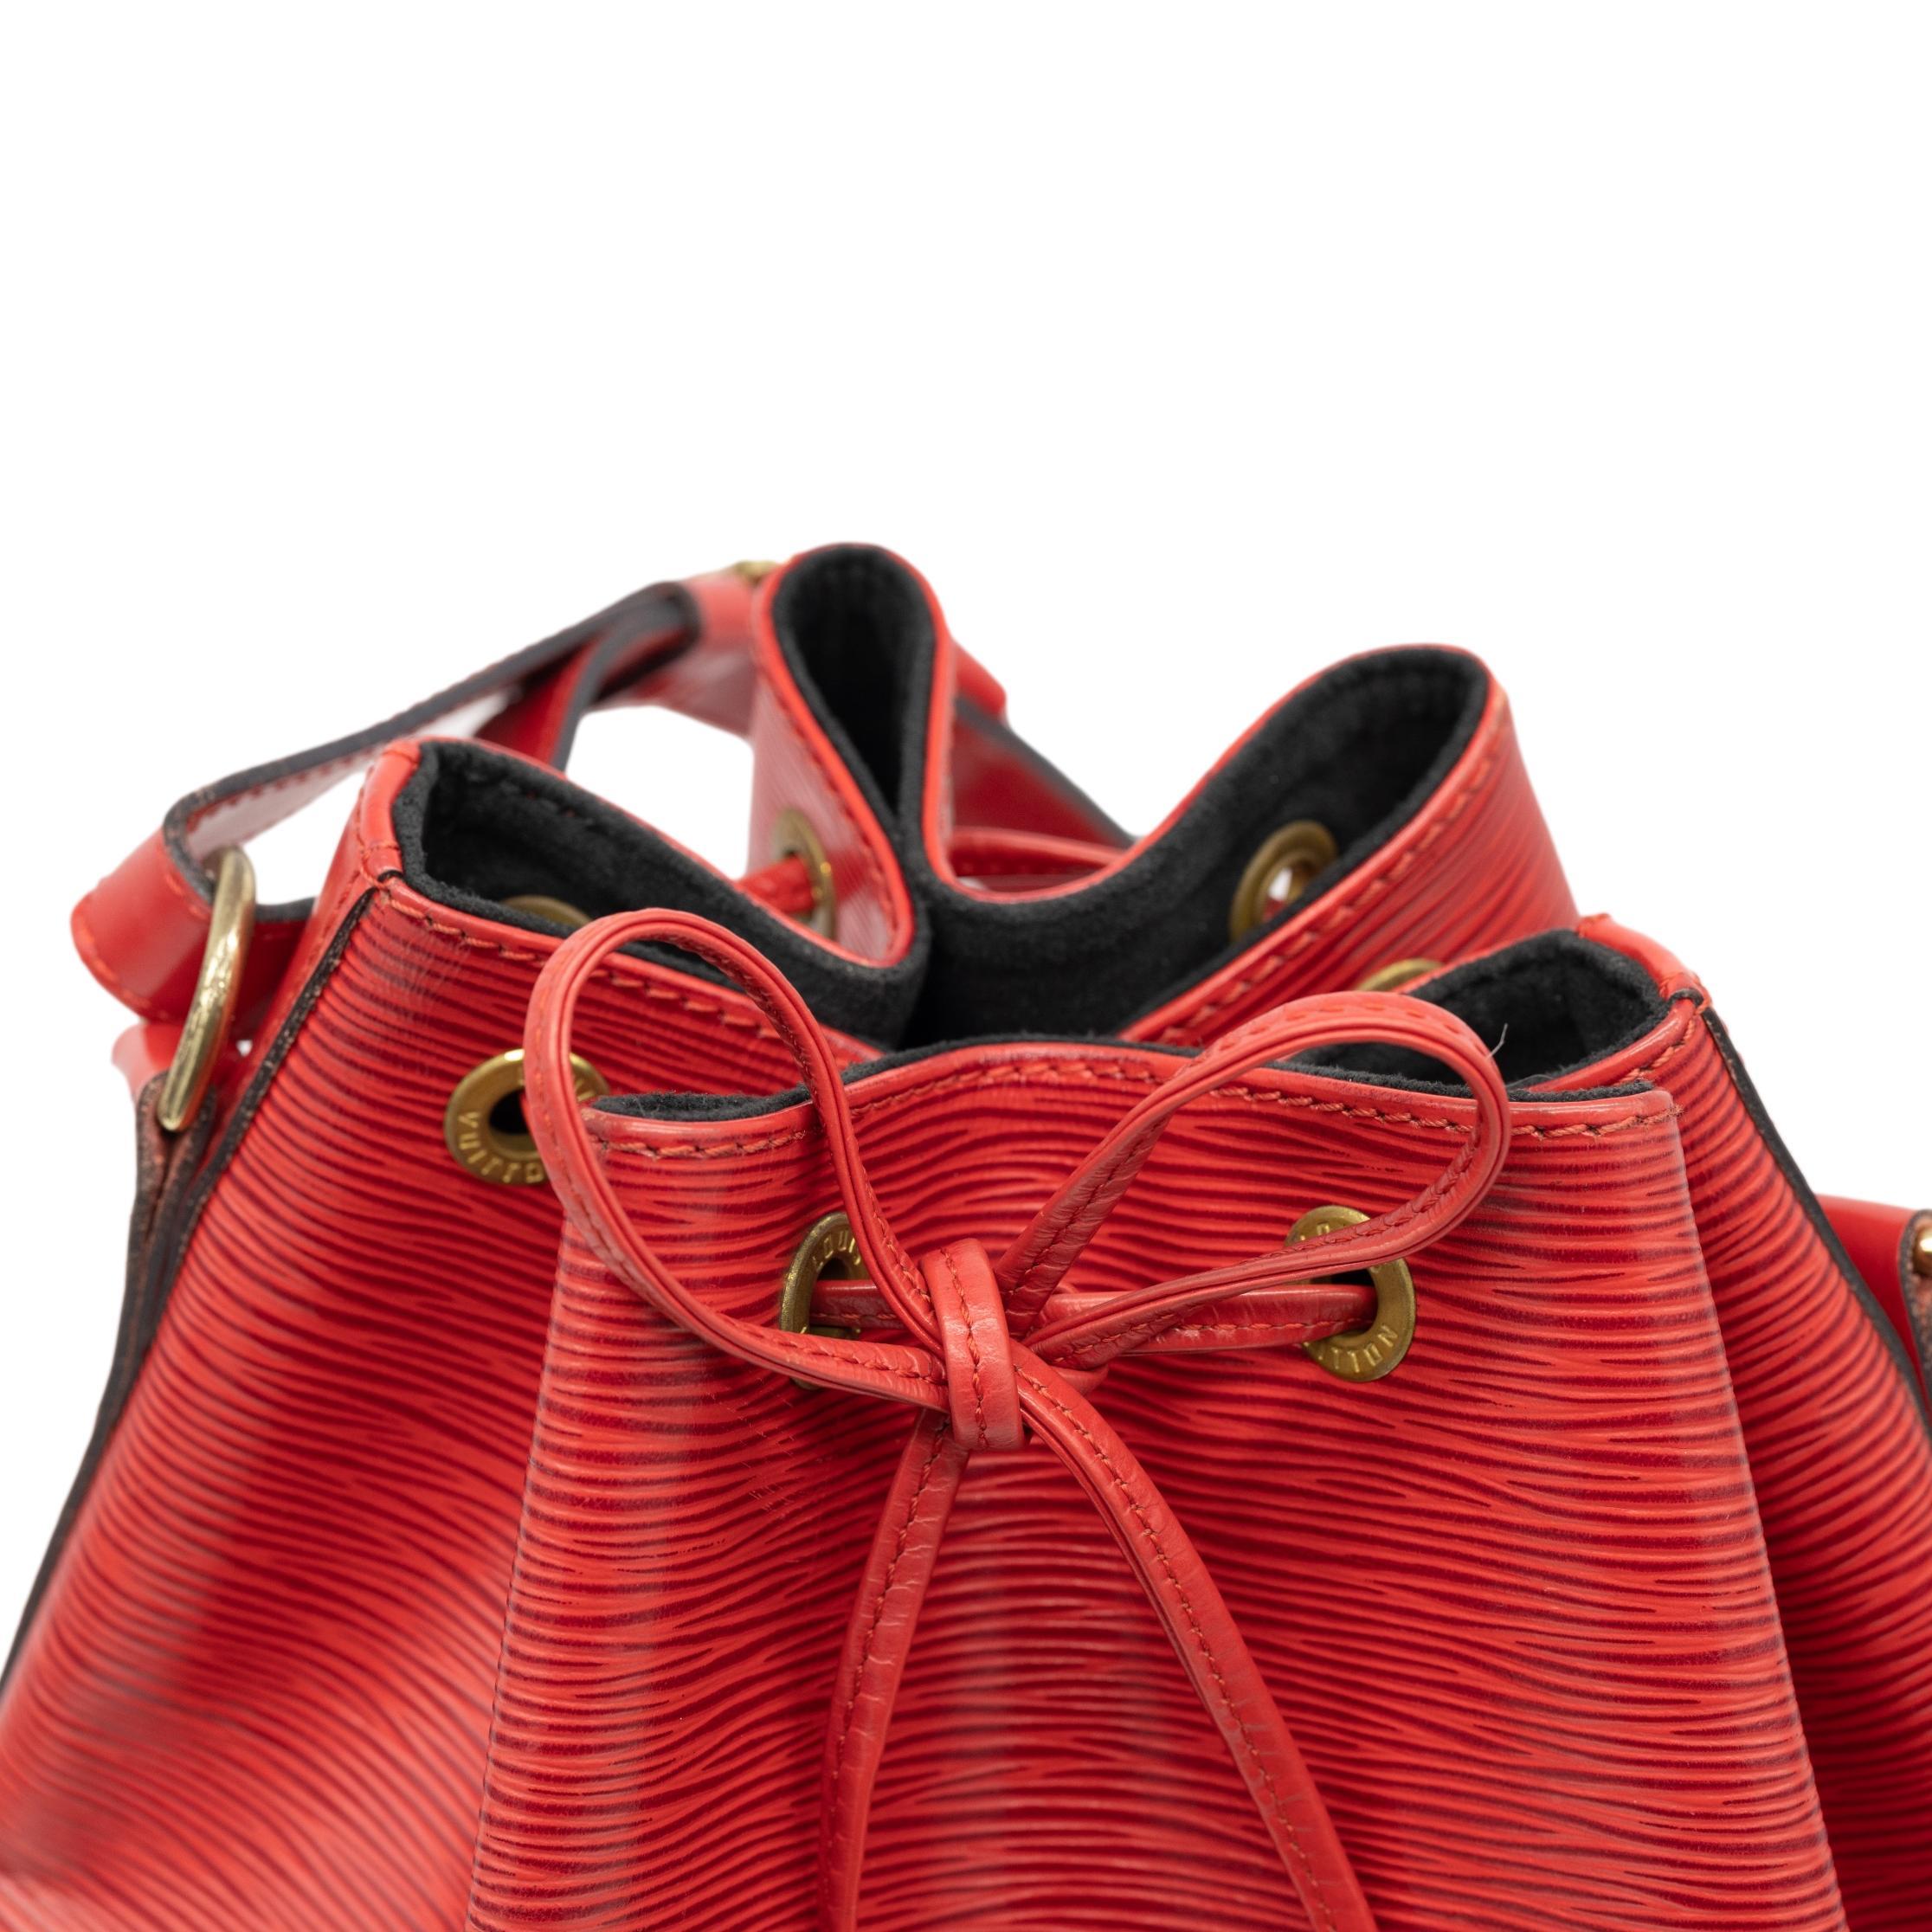 Louis Vuitton “Noe” PM Bucket Bag in Red EPI Leather Shoulder Bag, France 1993. 3